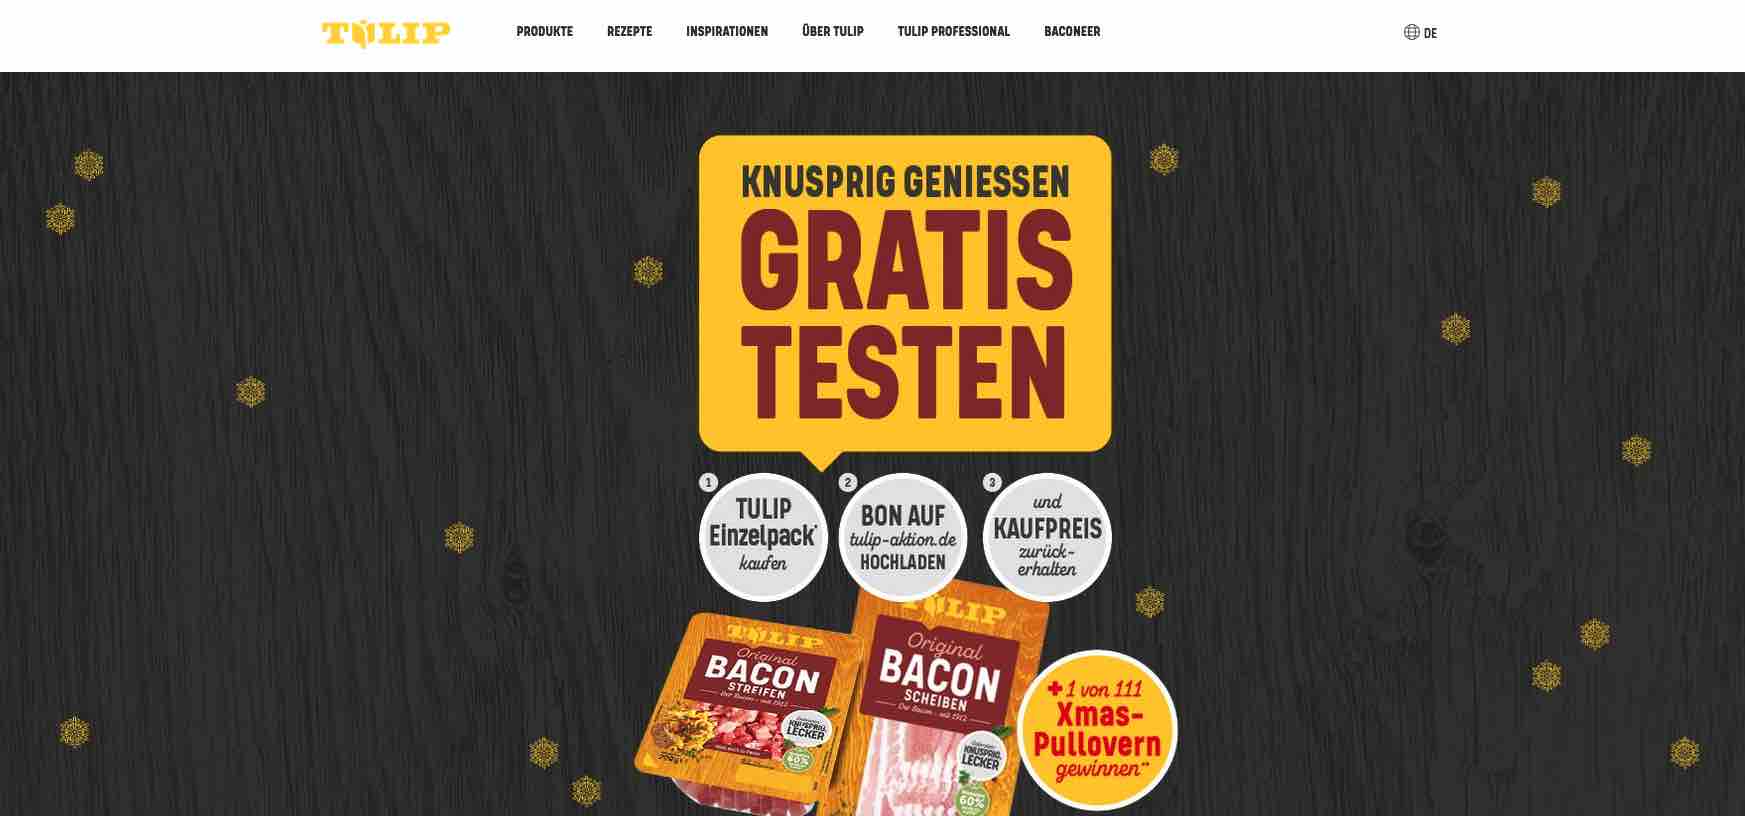 tulip bacon gratis testen